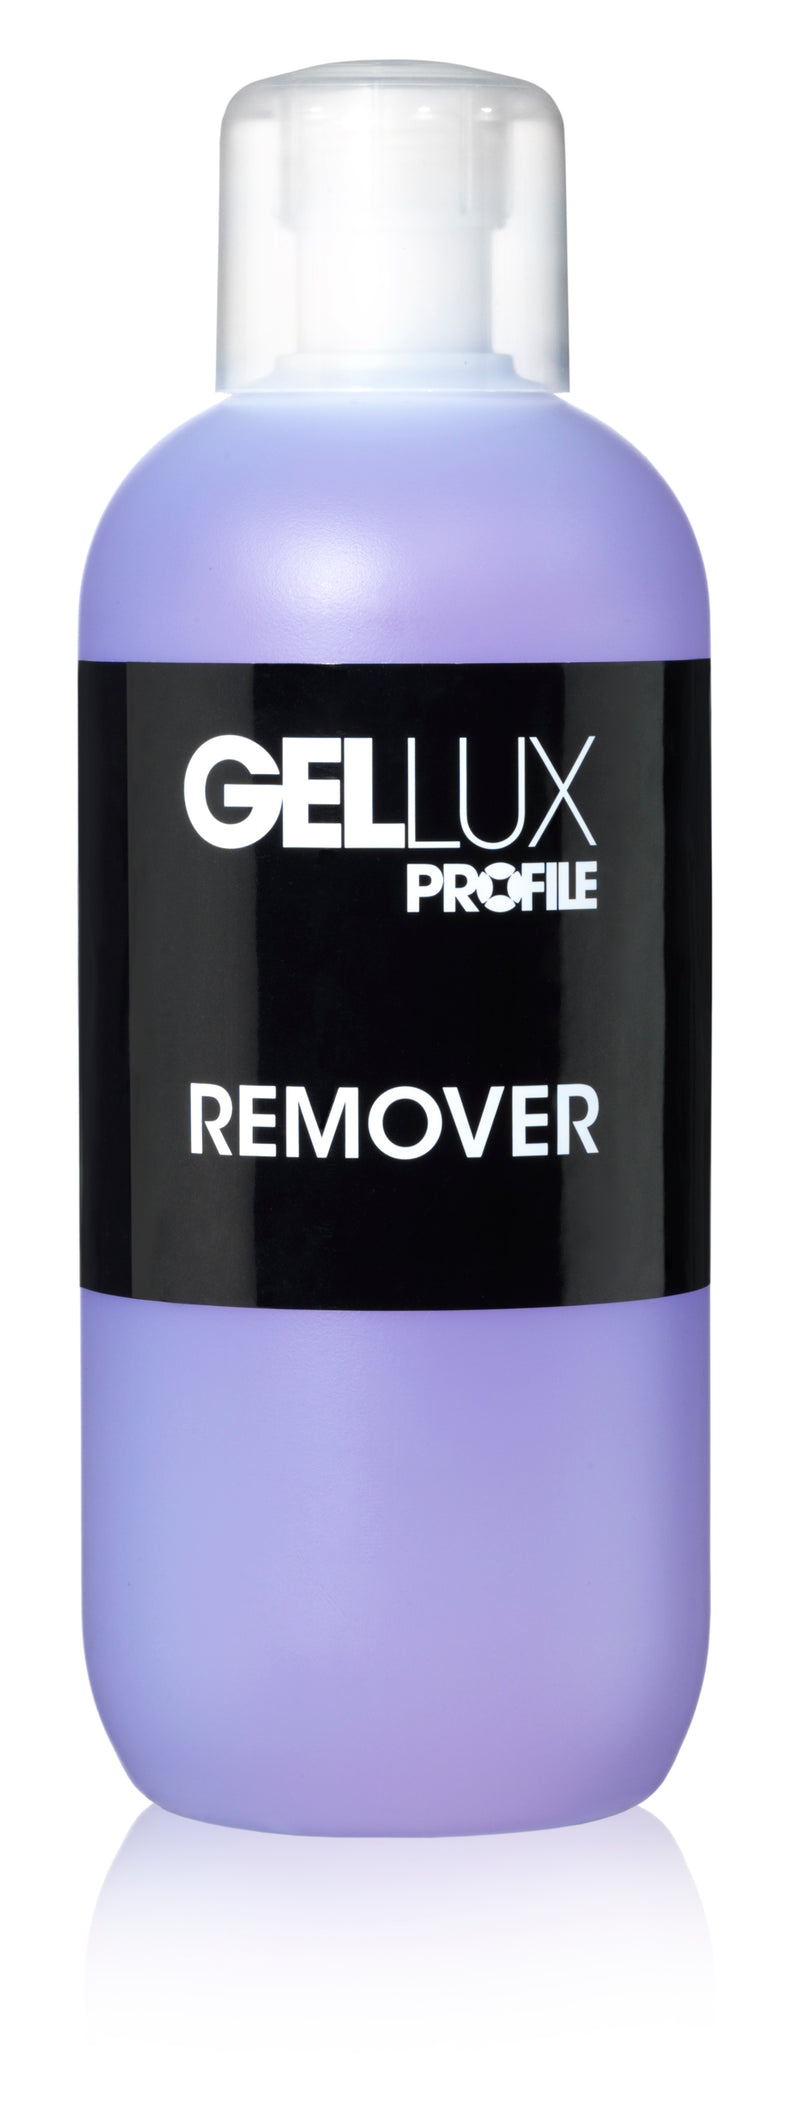 Gellux Remover